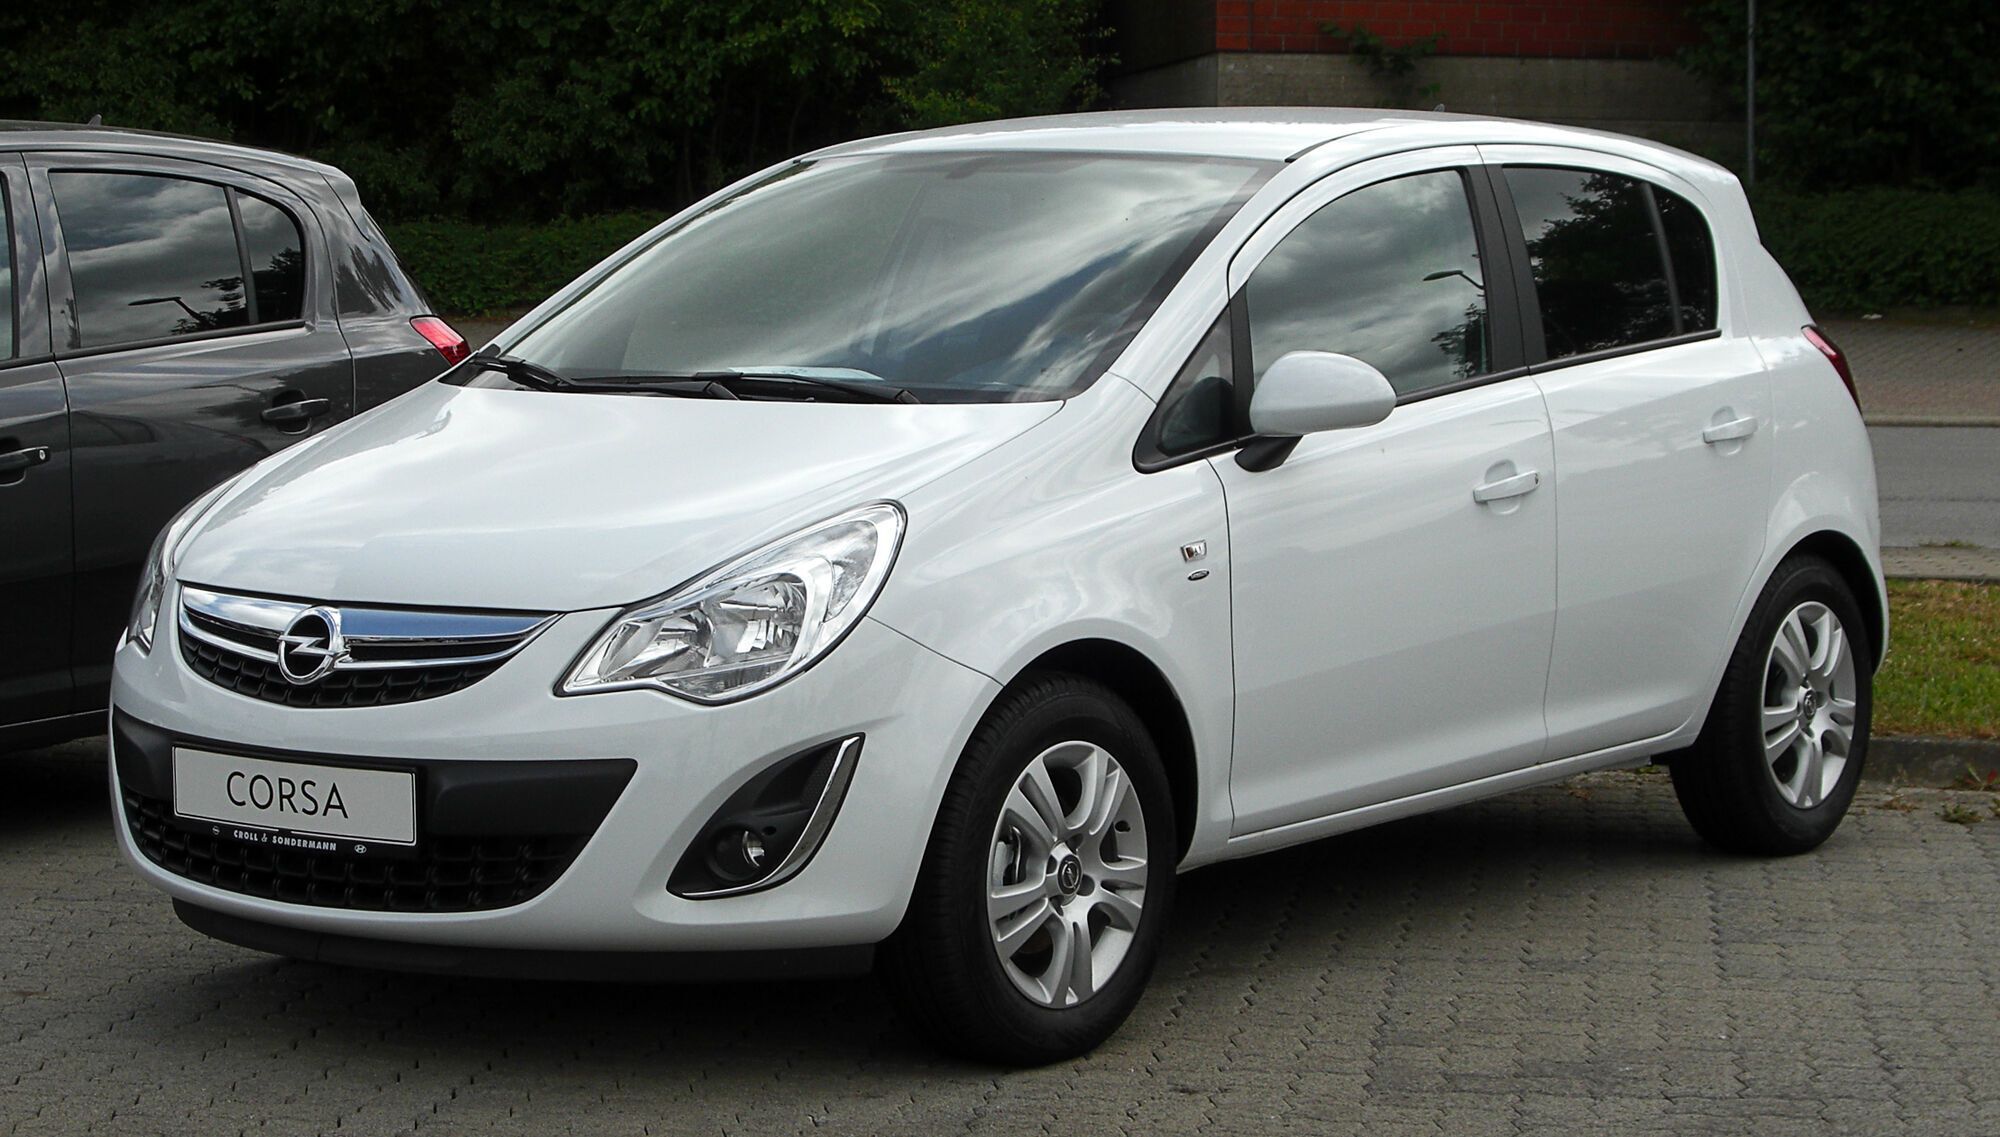 Opel Corsa 1.2 расходует 4 литра топлива на 100 км